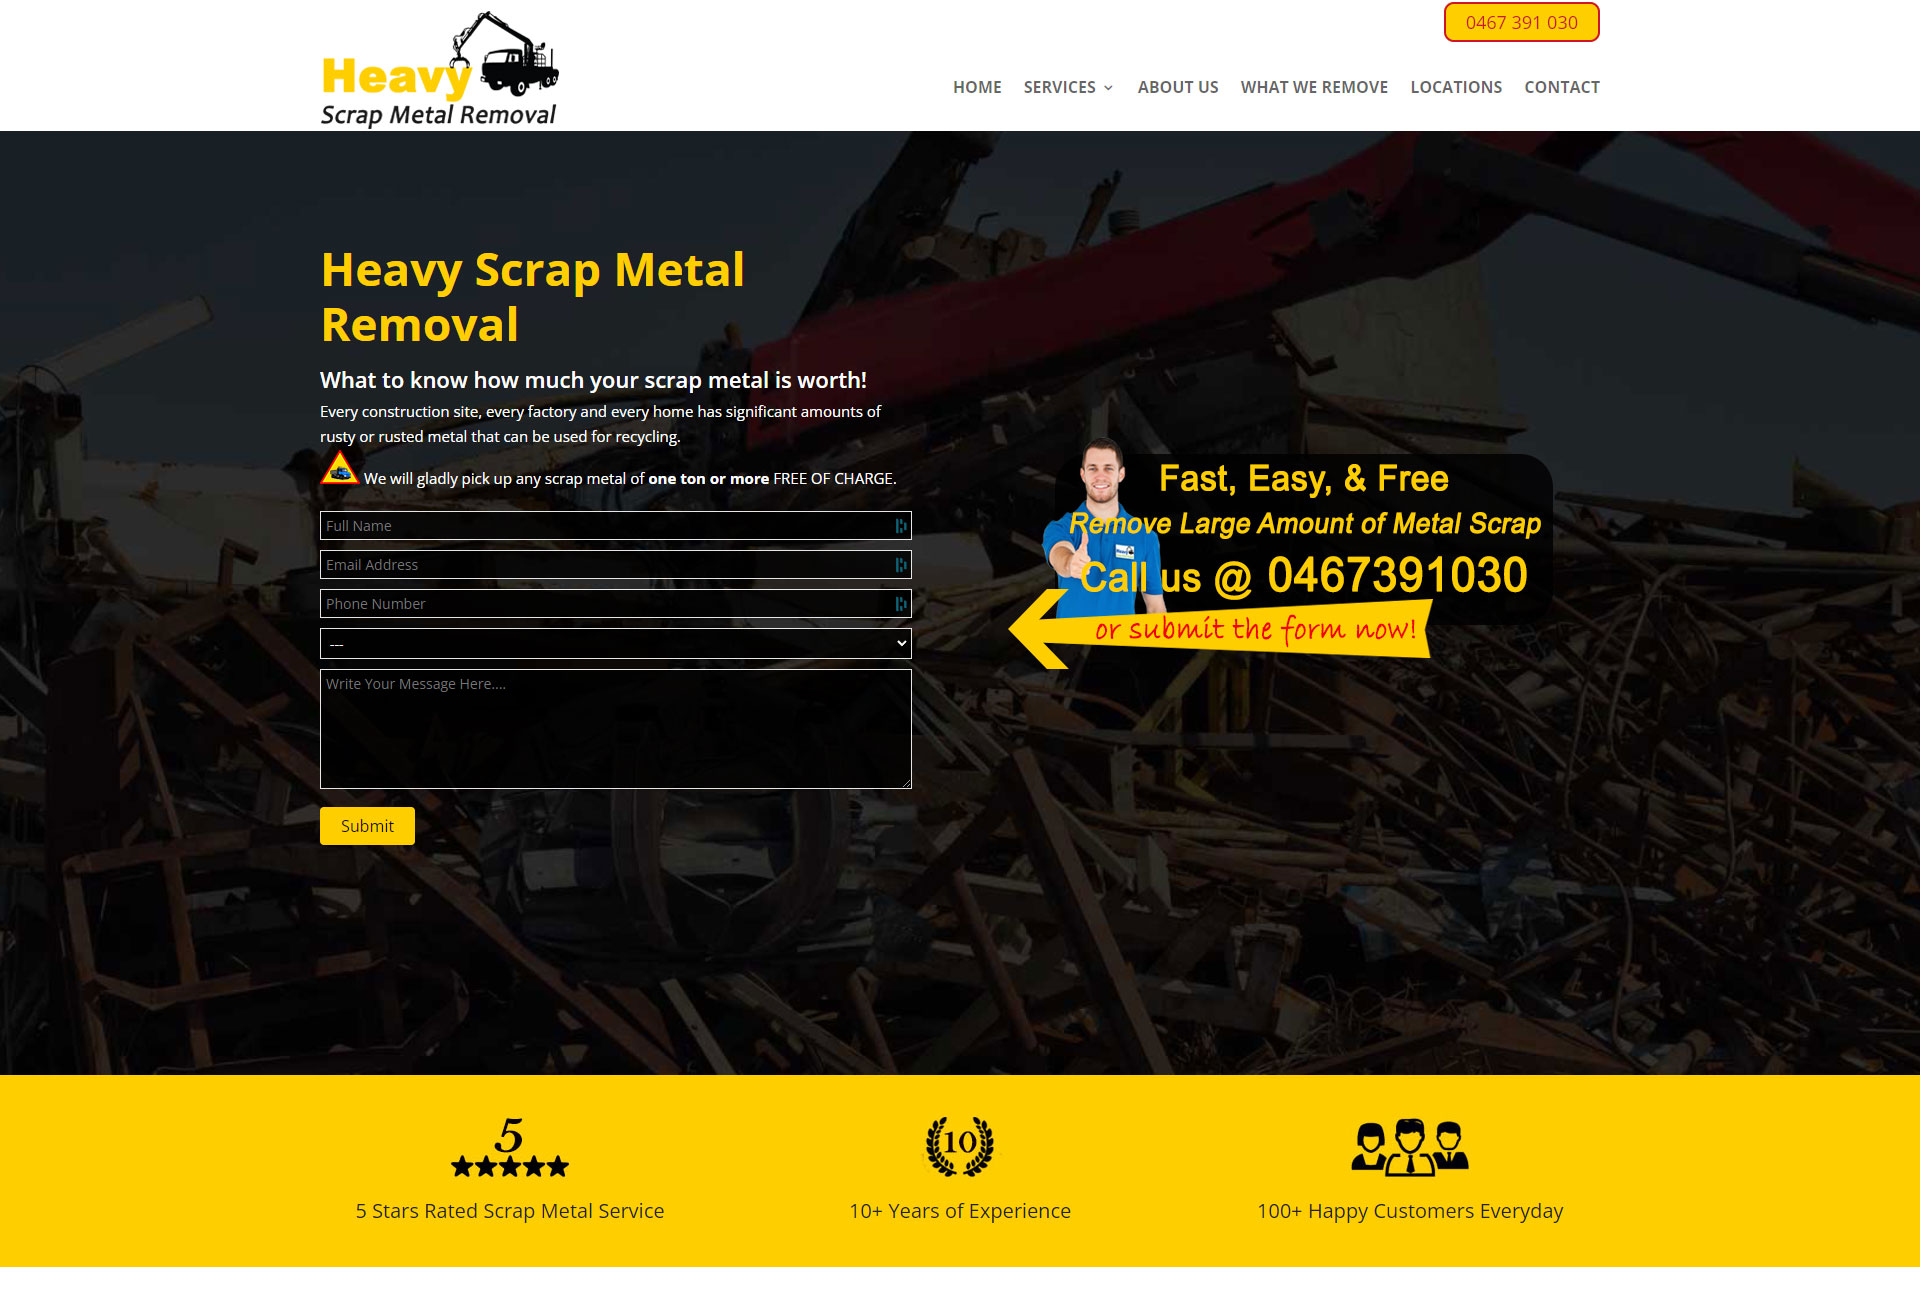 heavyscrapmetal.com.au